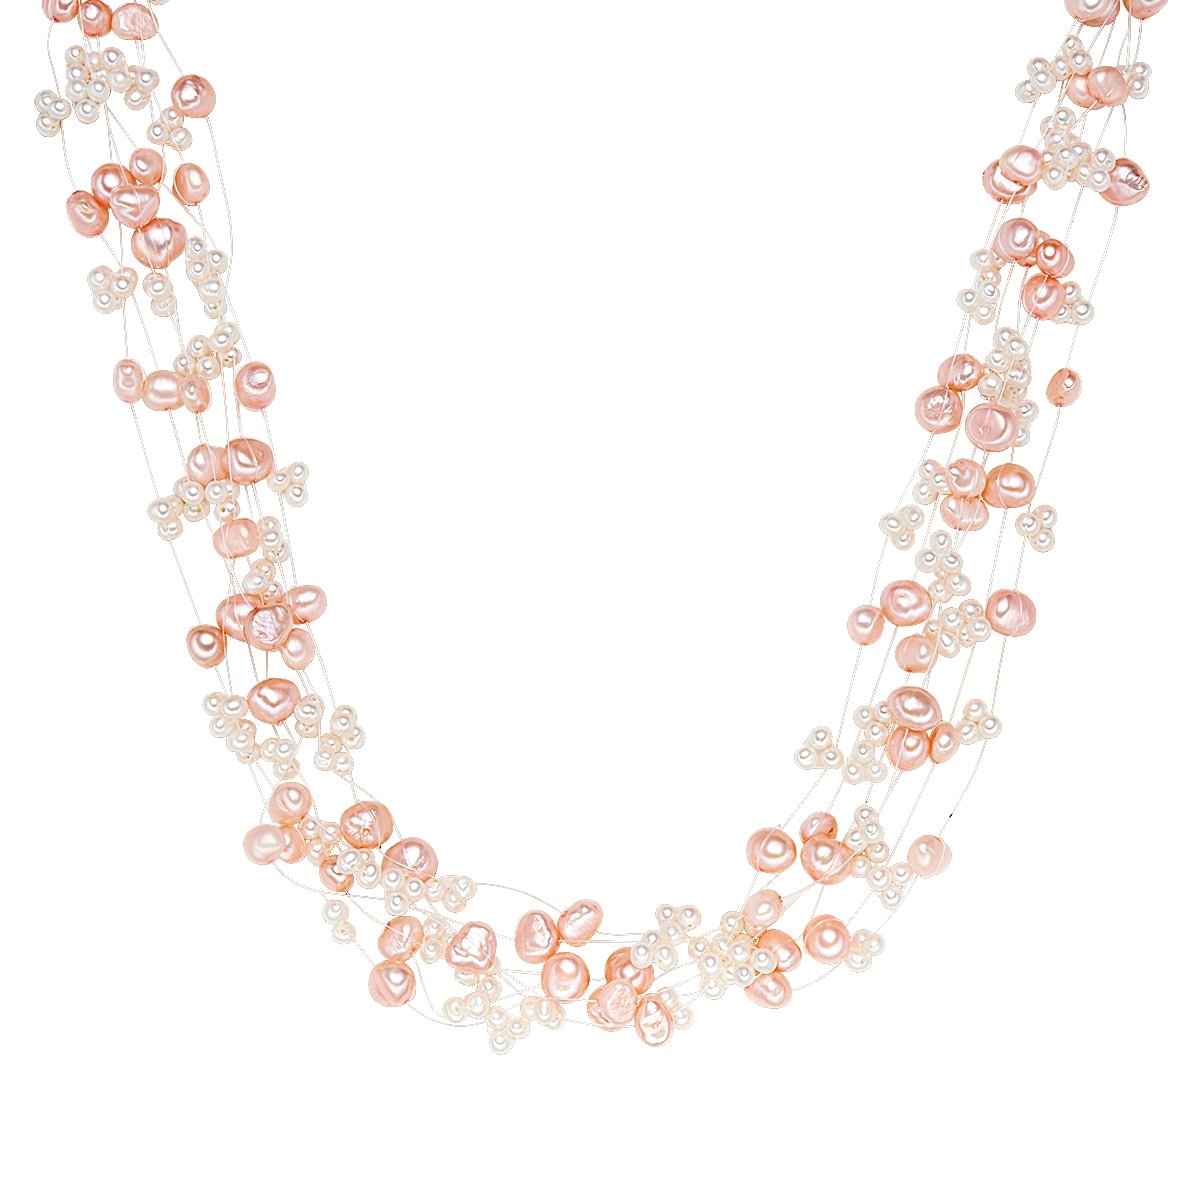 Valero Pearls Damen-Kette Hochwertige Süßwasser-Zuchtperlen in ca. 4-6 mm Barock rosa/weiß 43 cm + 5 cm Verlängerung - Perlenkette Halskette mit echten Perlen rosé weiss 60200102